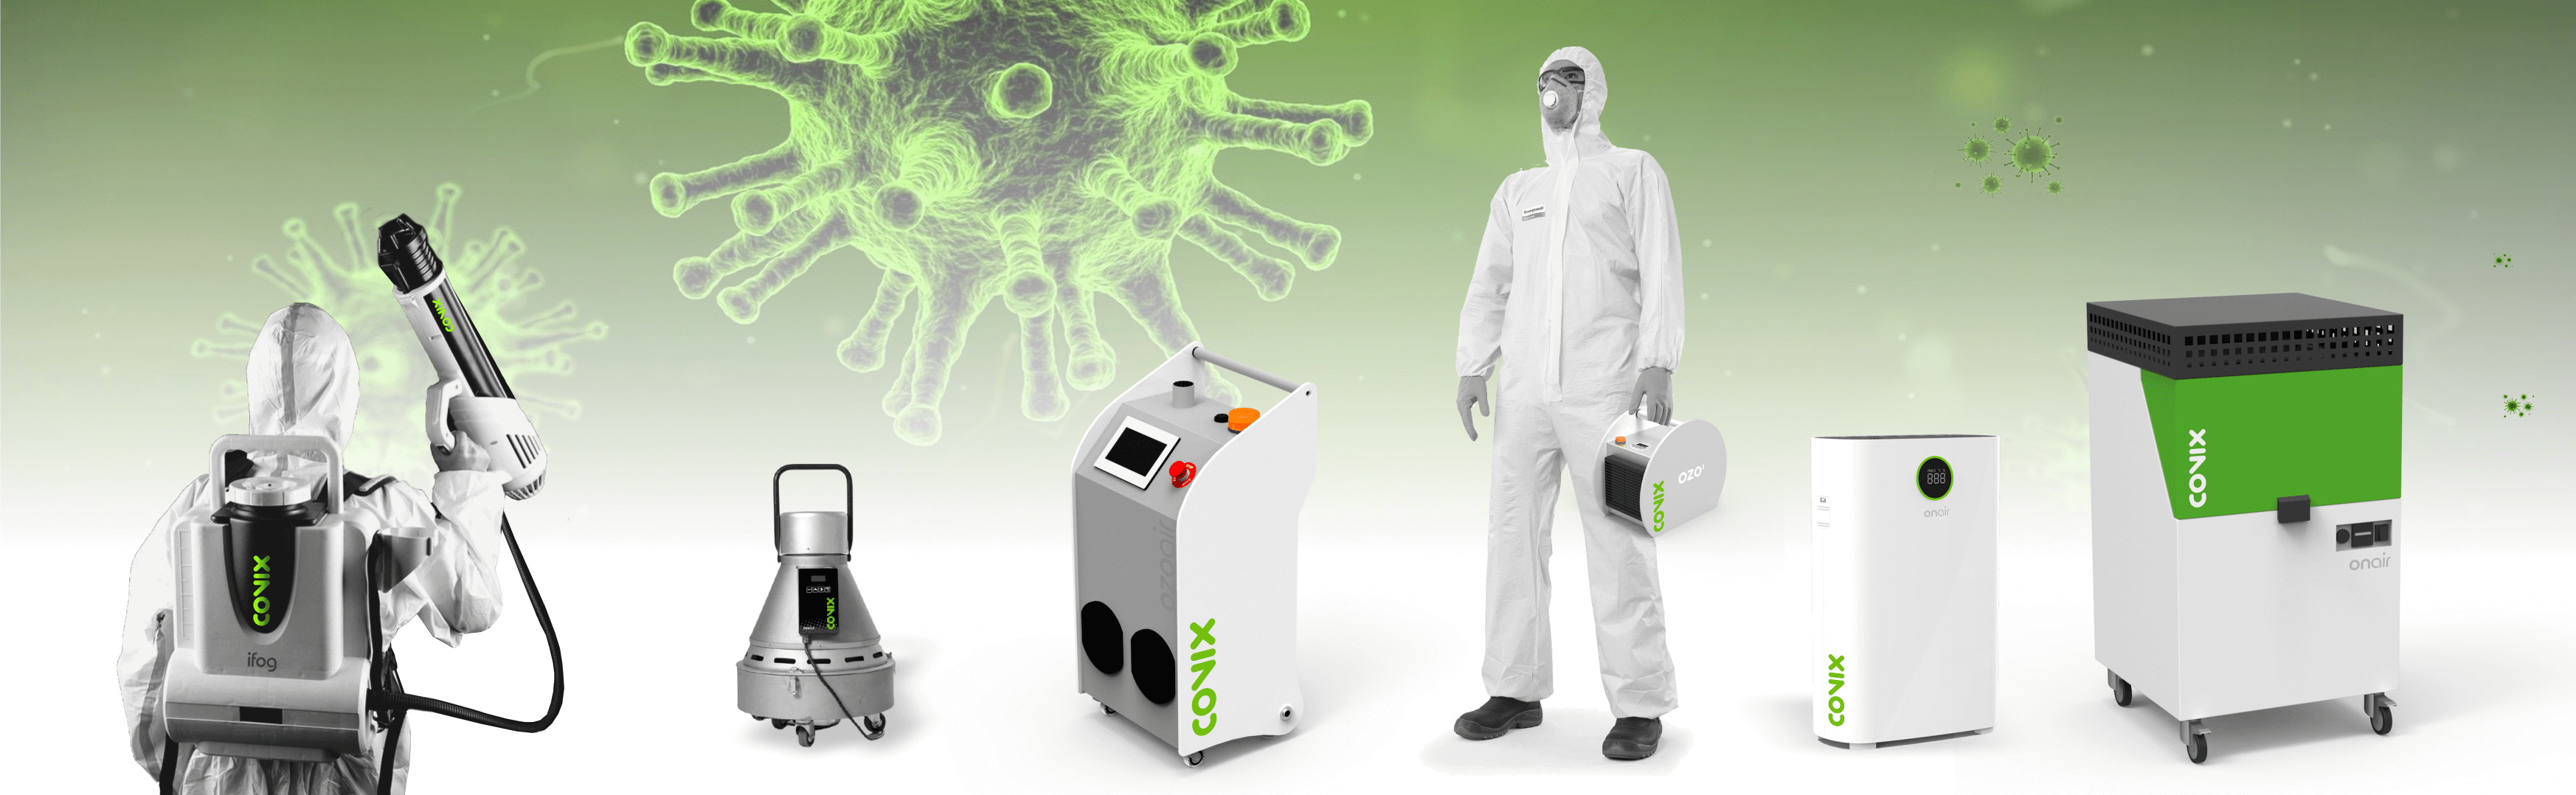 Covix oferece todo o equipamento de desinfecção de vírus, bactérias e fungos de que possa necessitar.